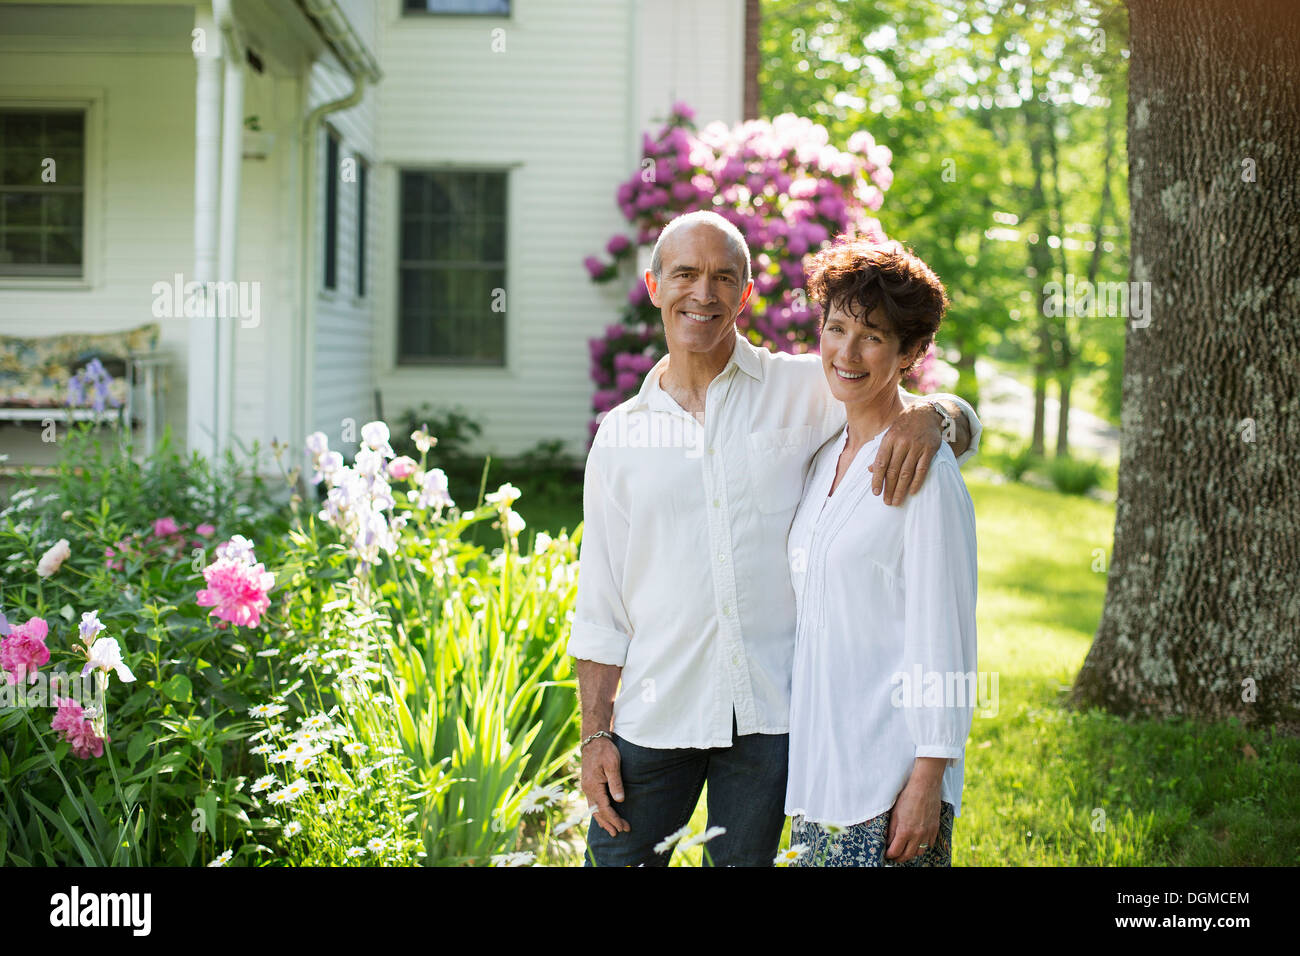 Ferme biologique. Fête de l'été. Un couple mature en chemises blanches se tenant ensemble parmi les fleurs. Banque D'Images